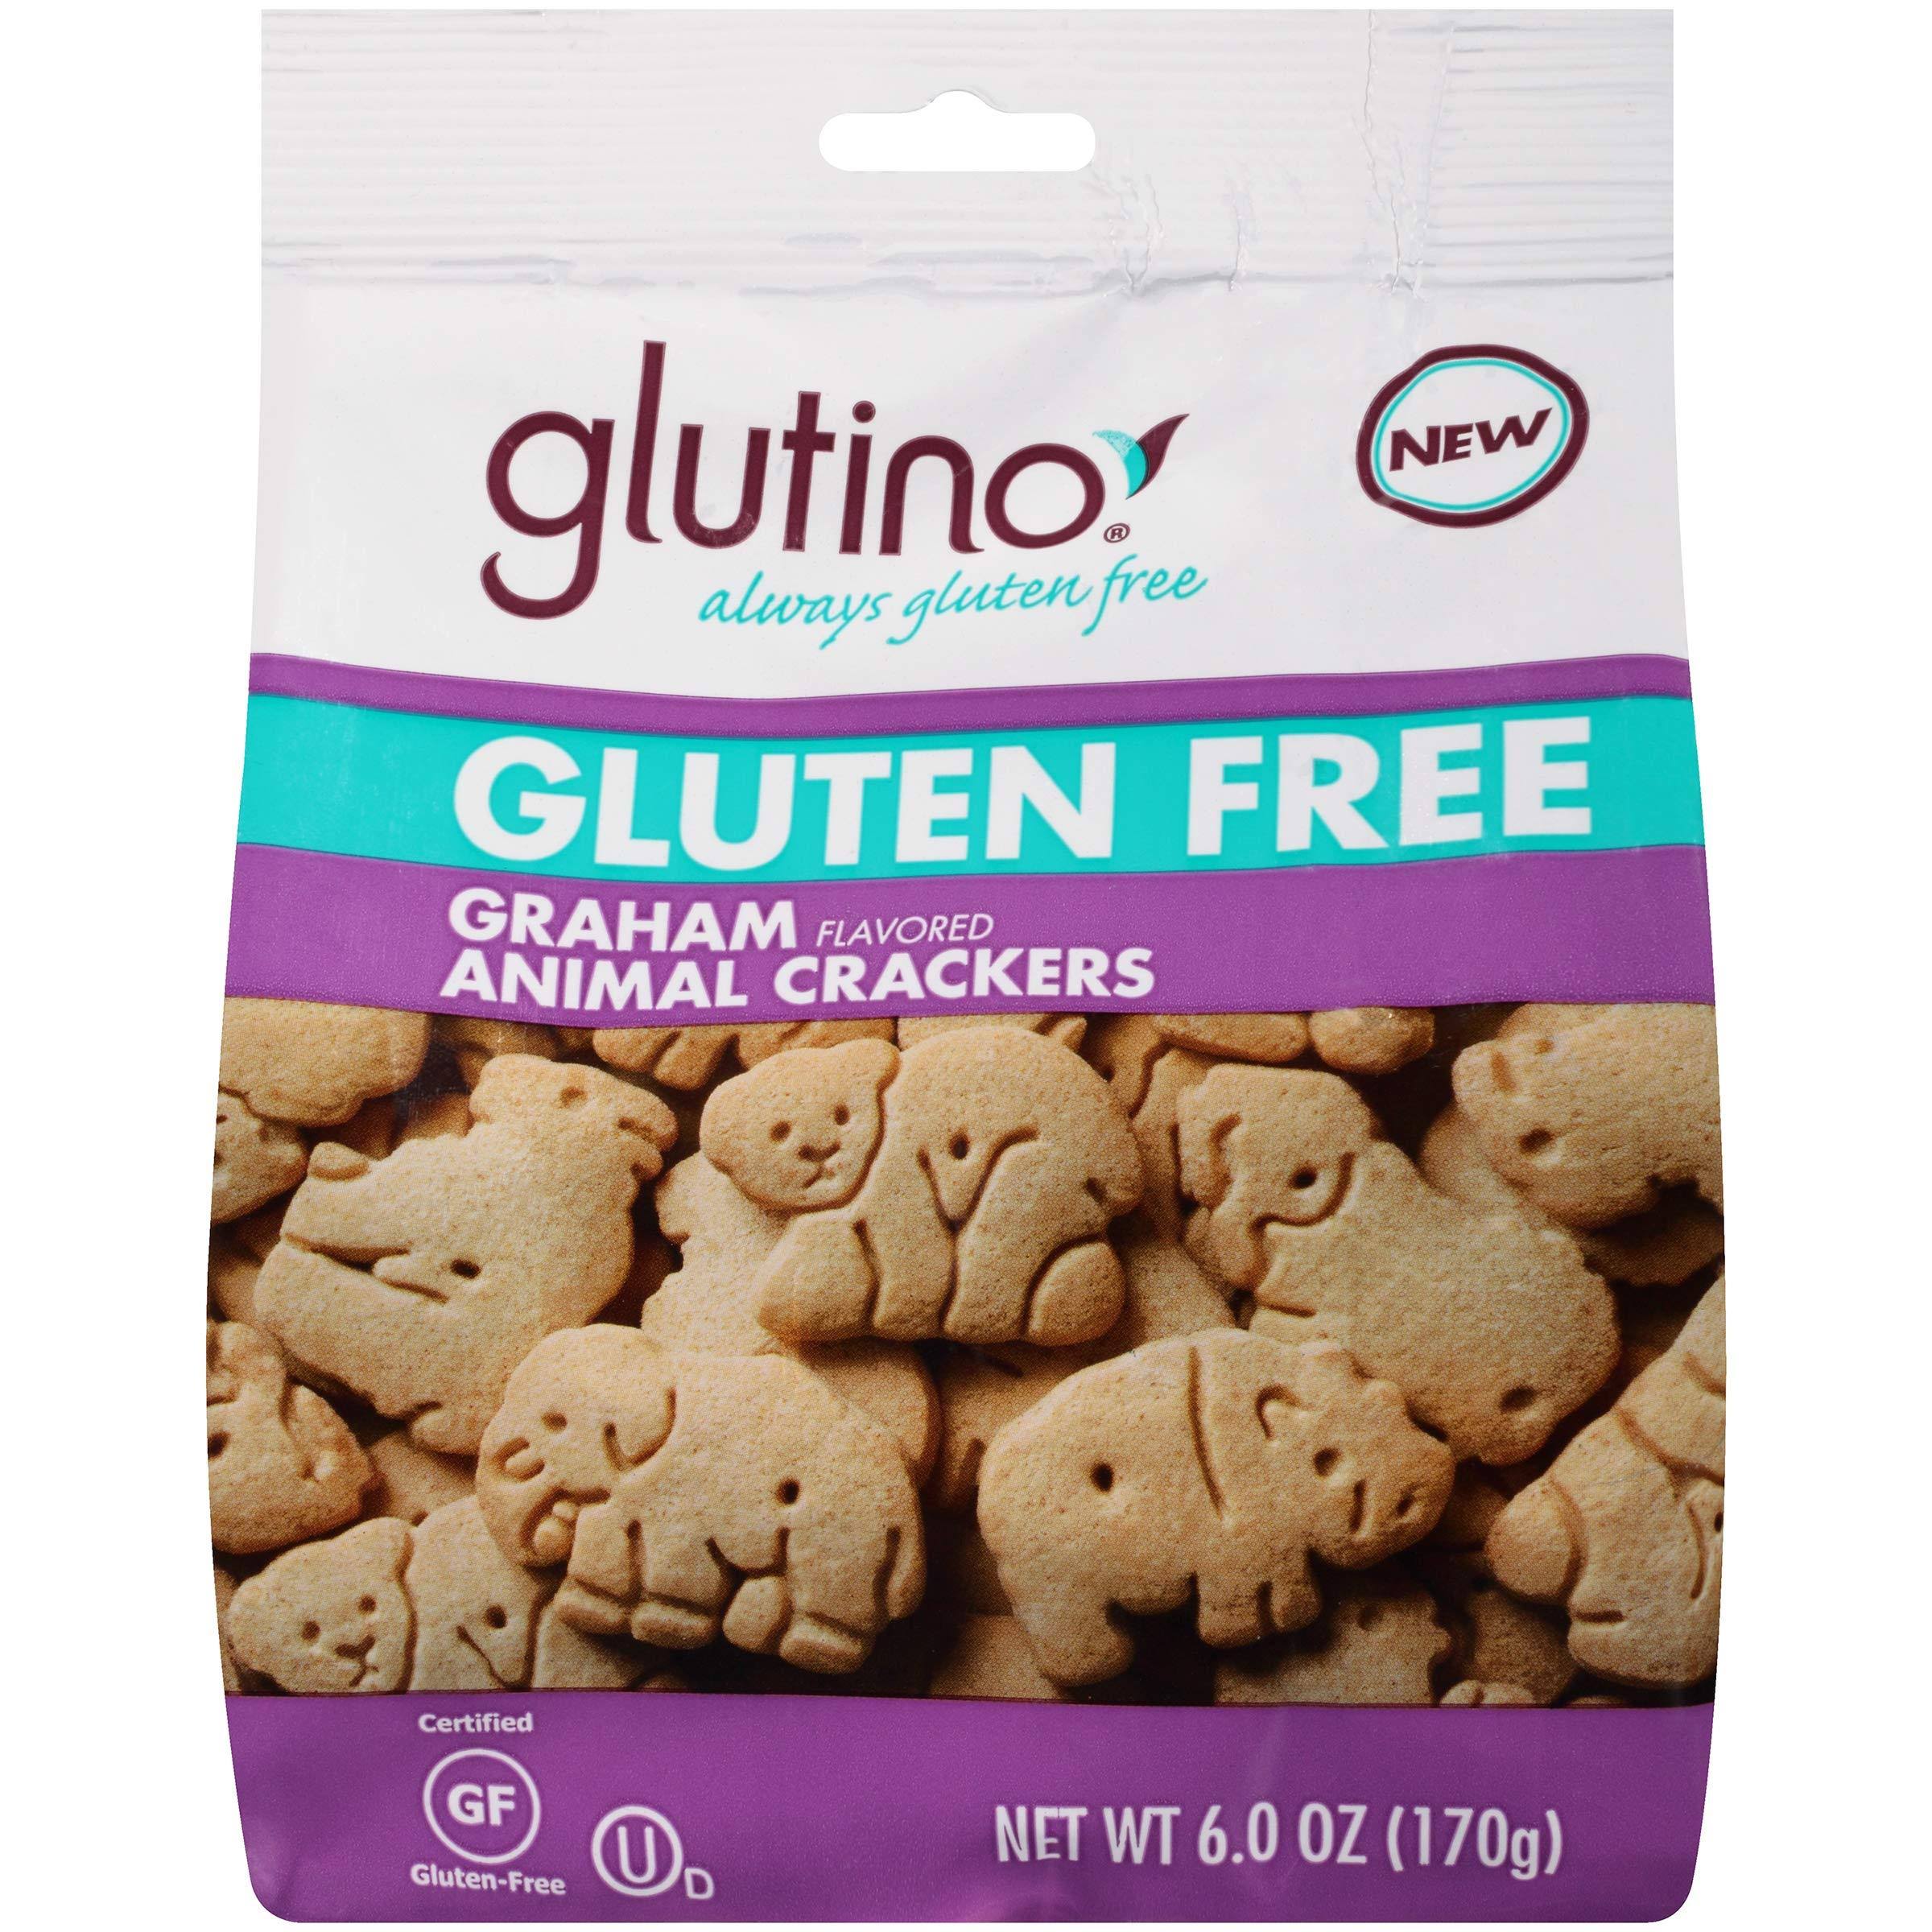 Glutino Gluten Free Animal Crackers - Graham Flavor, 6oz